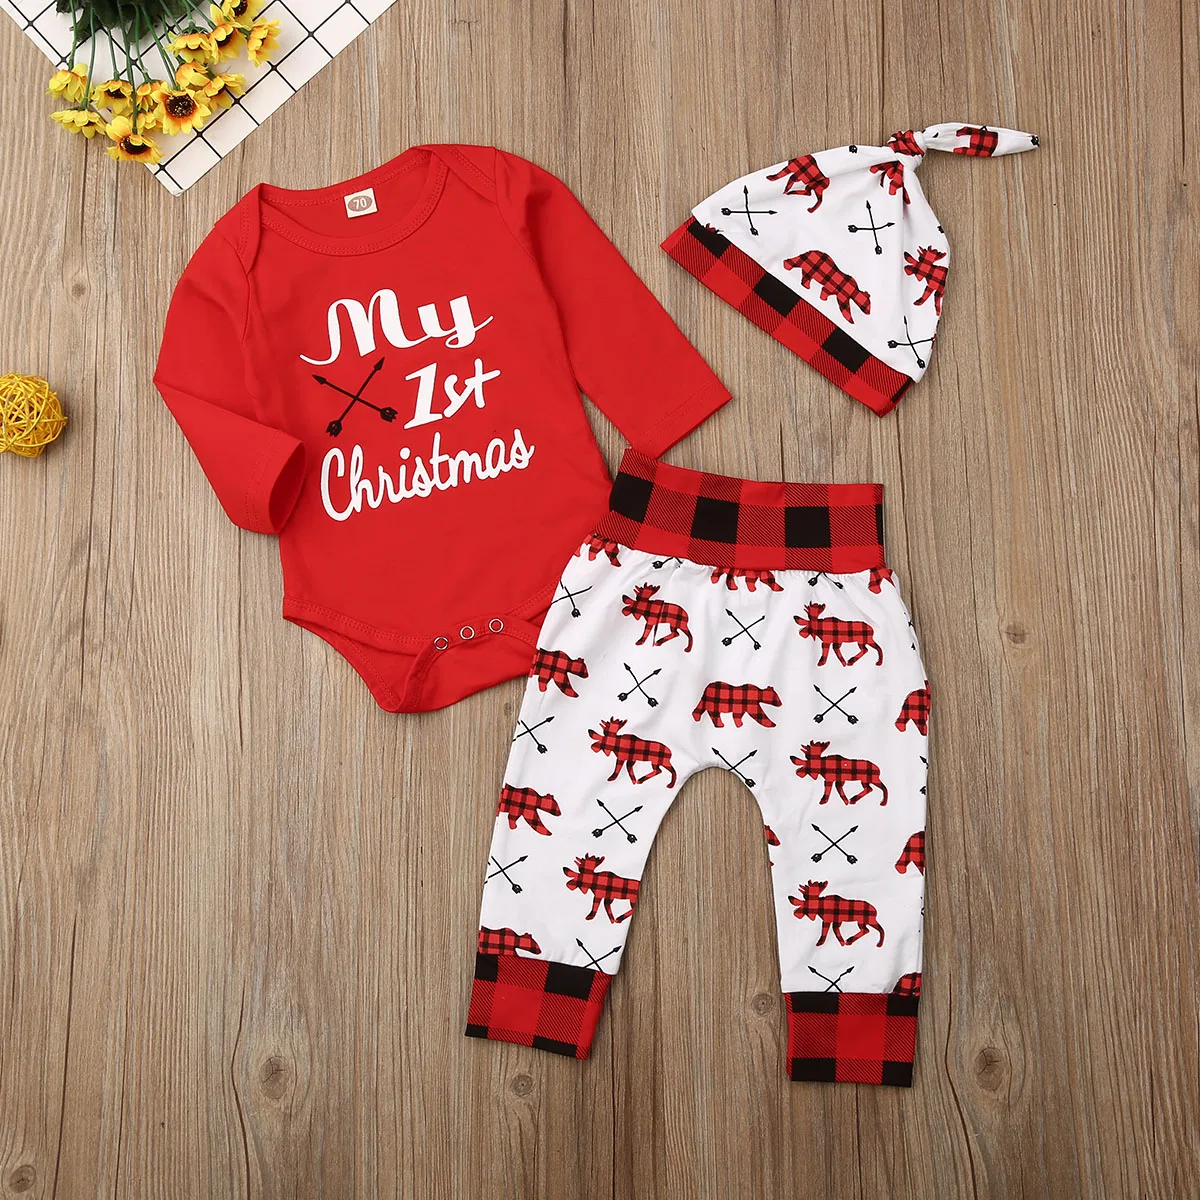 Милые детские комплекты для маленьких мальчиков и девочек Комбинезон с надписью «My First Christmas», топы в клетку, штаны с высокой талией Рождественский комплект